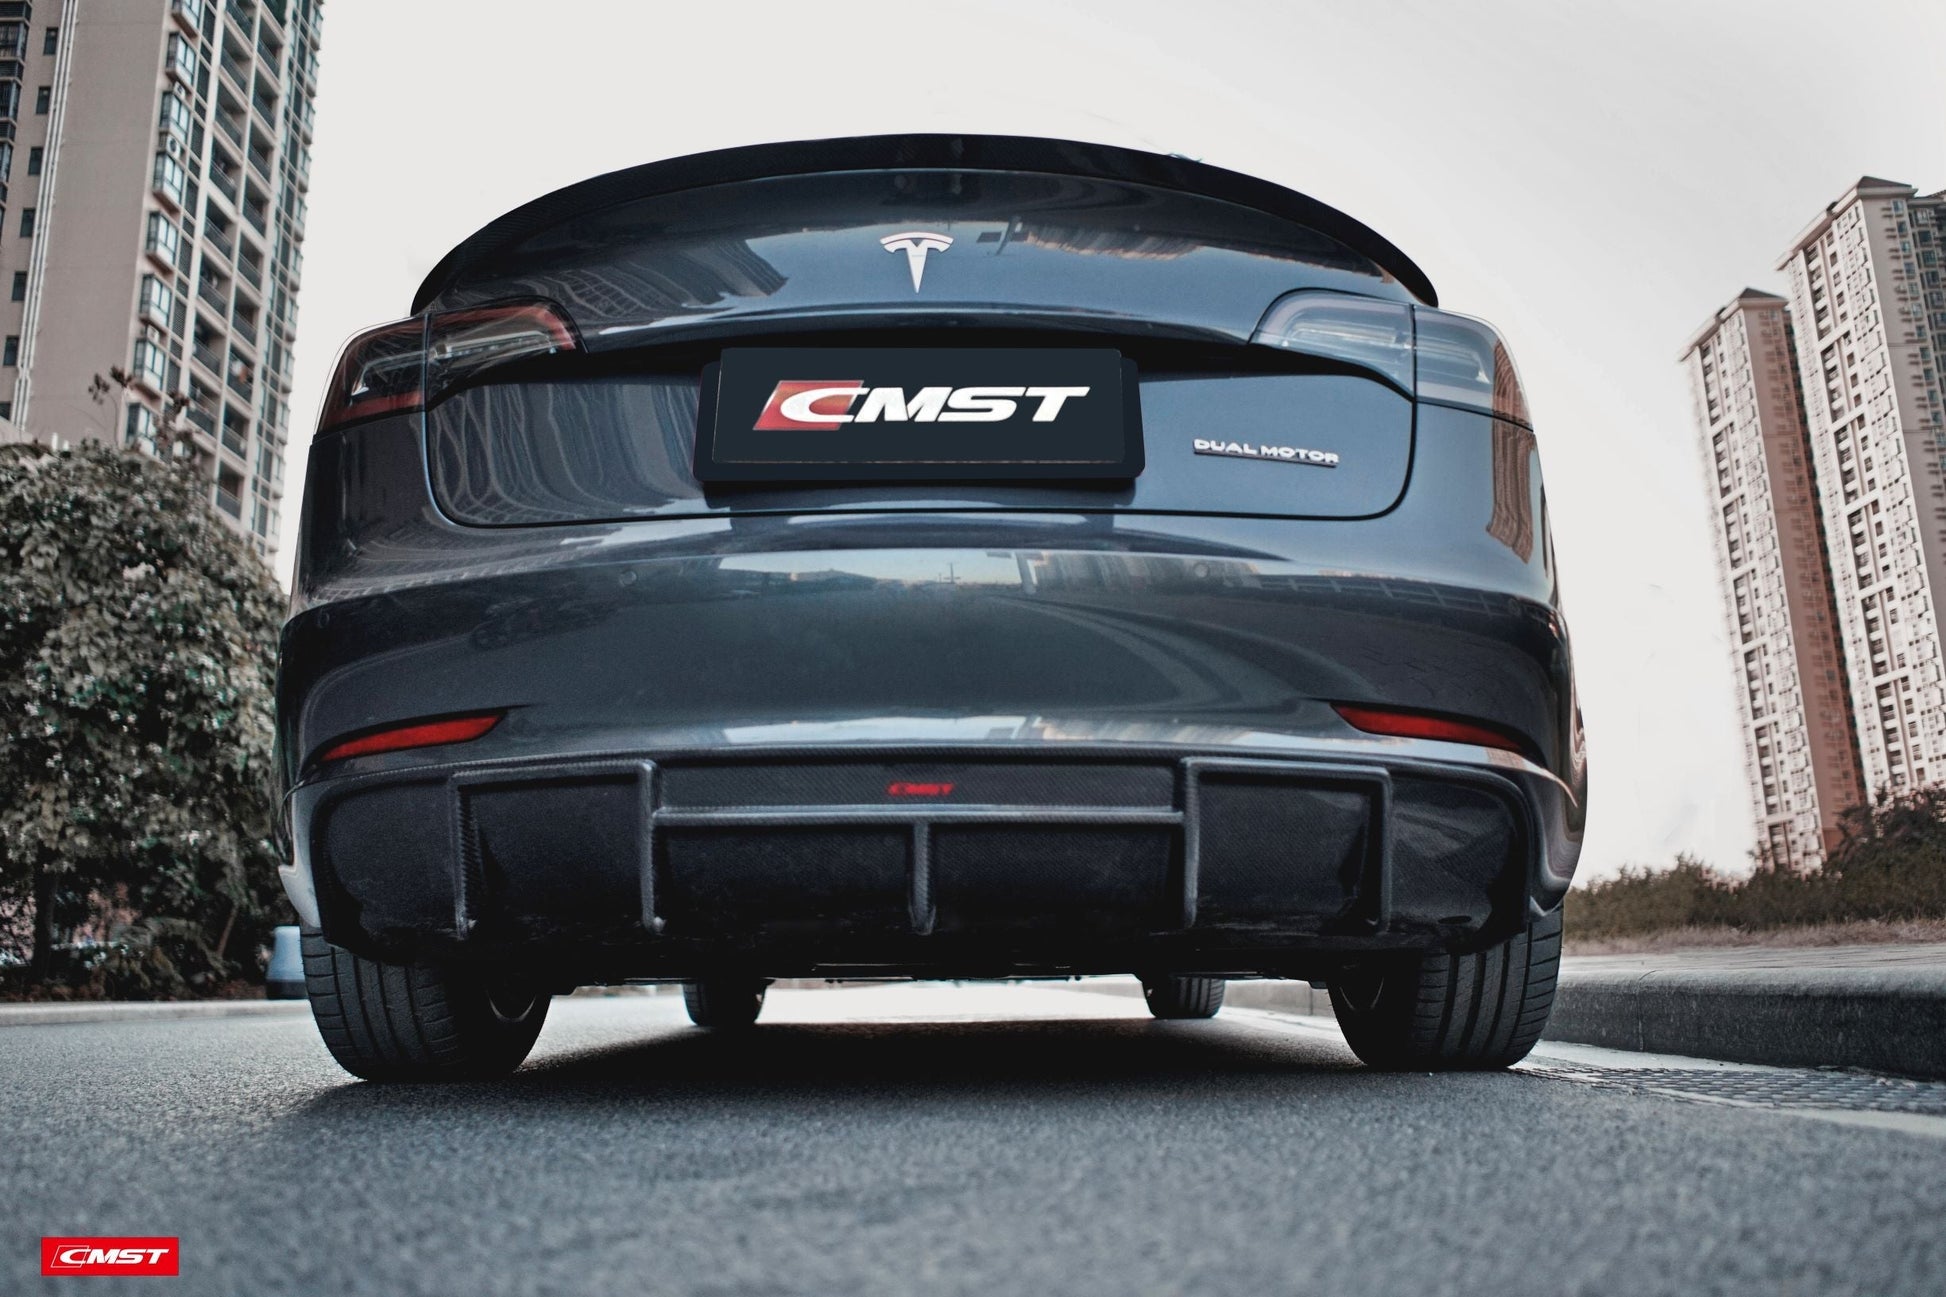 TESERY×CMST Tesla Model 3 Carbon Fiber Rear Diffuser Ver.1 - Tesery Official Store